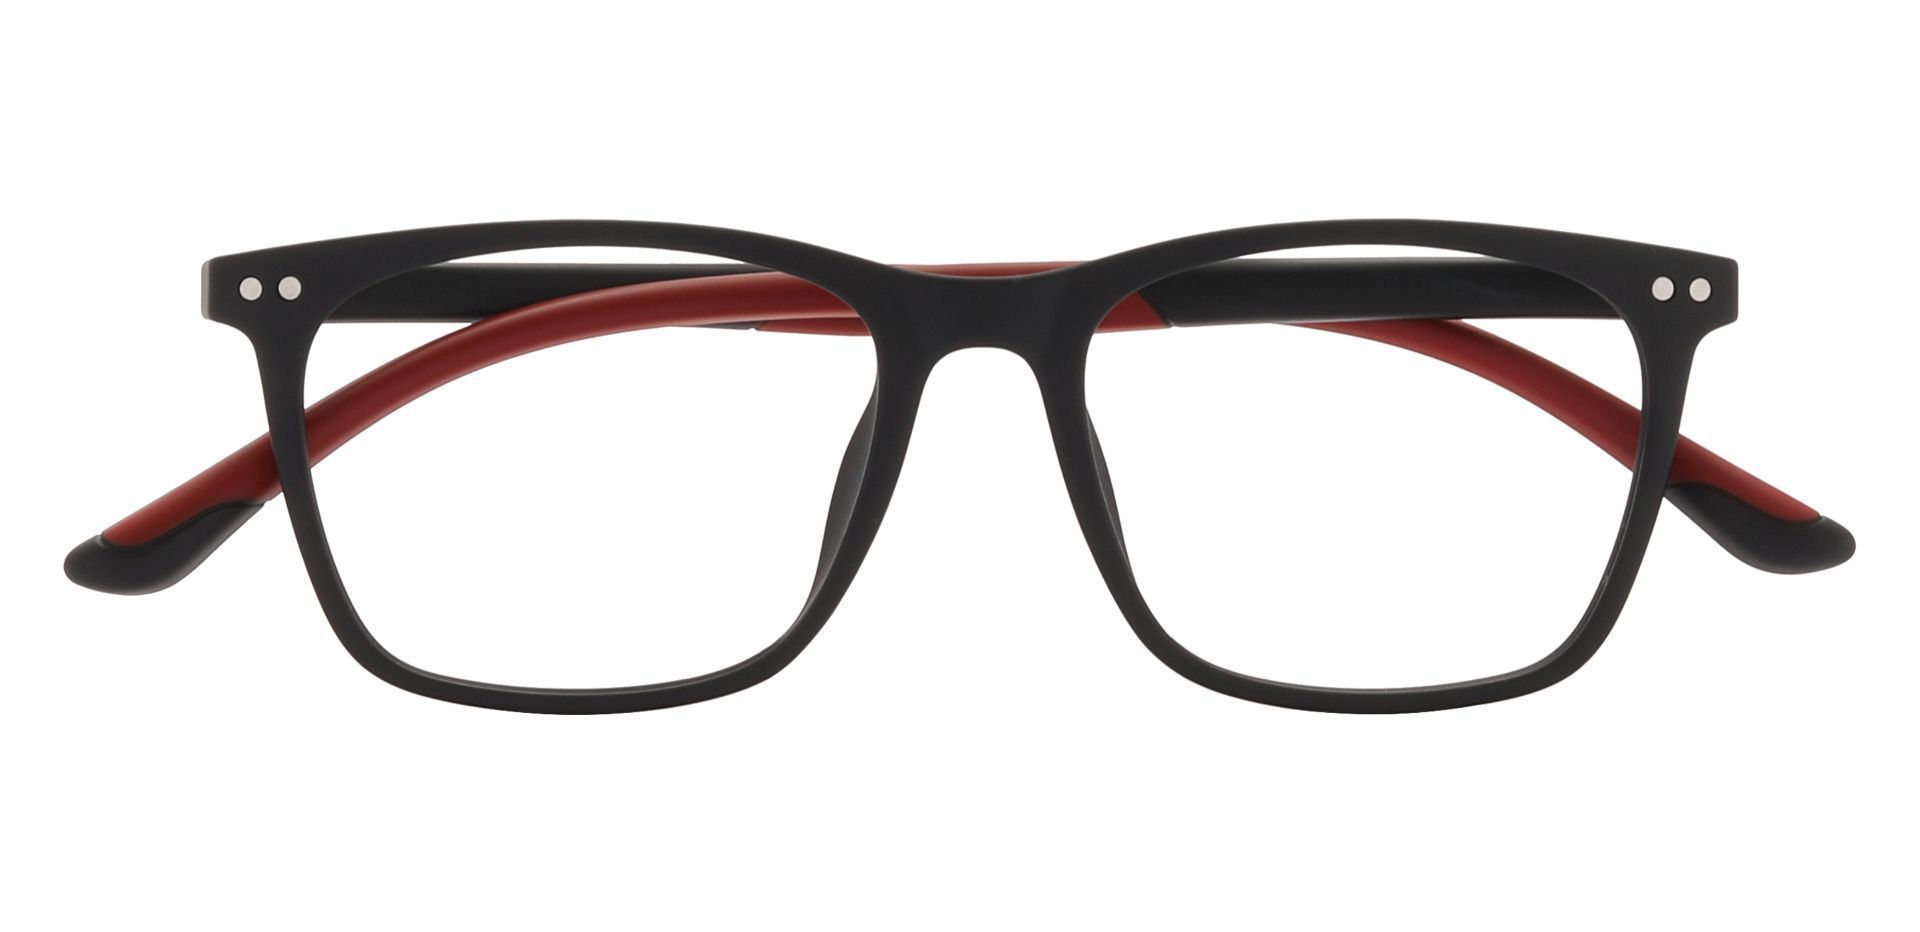 Slane Square Prescription Glasses - Red